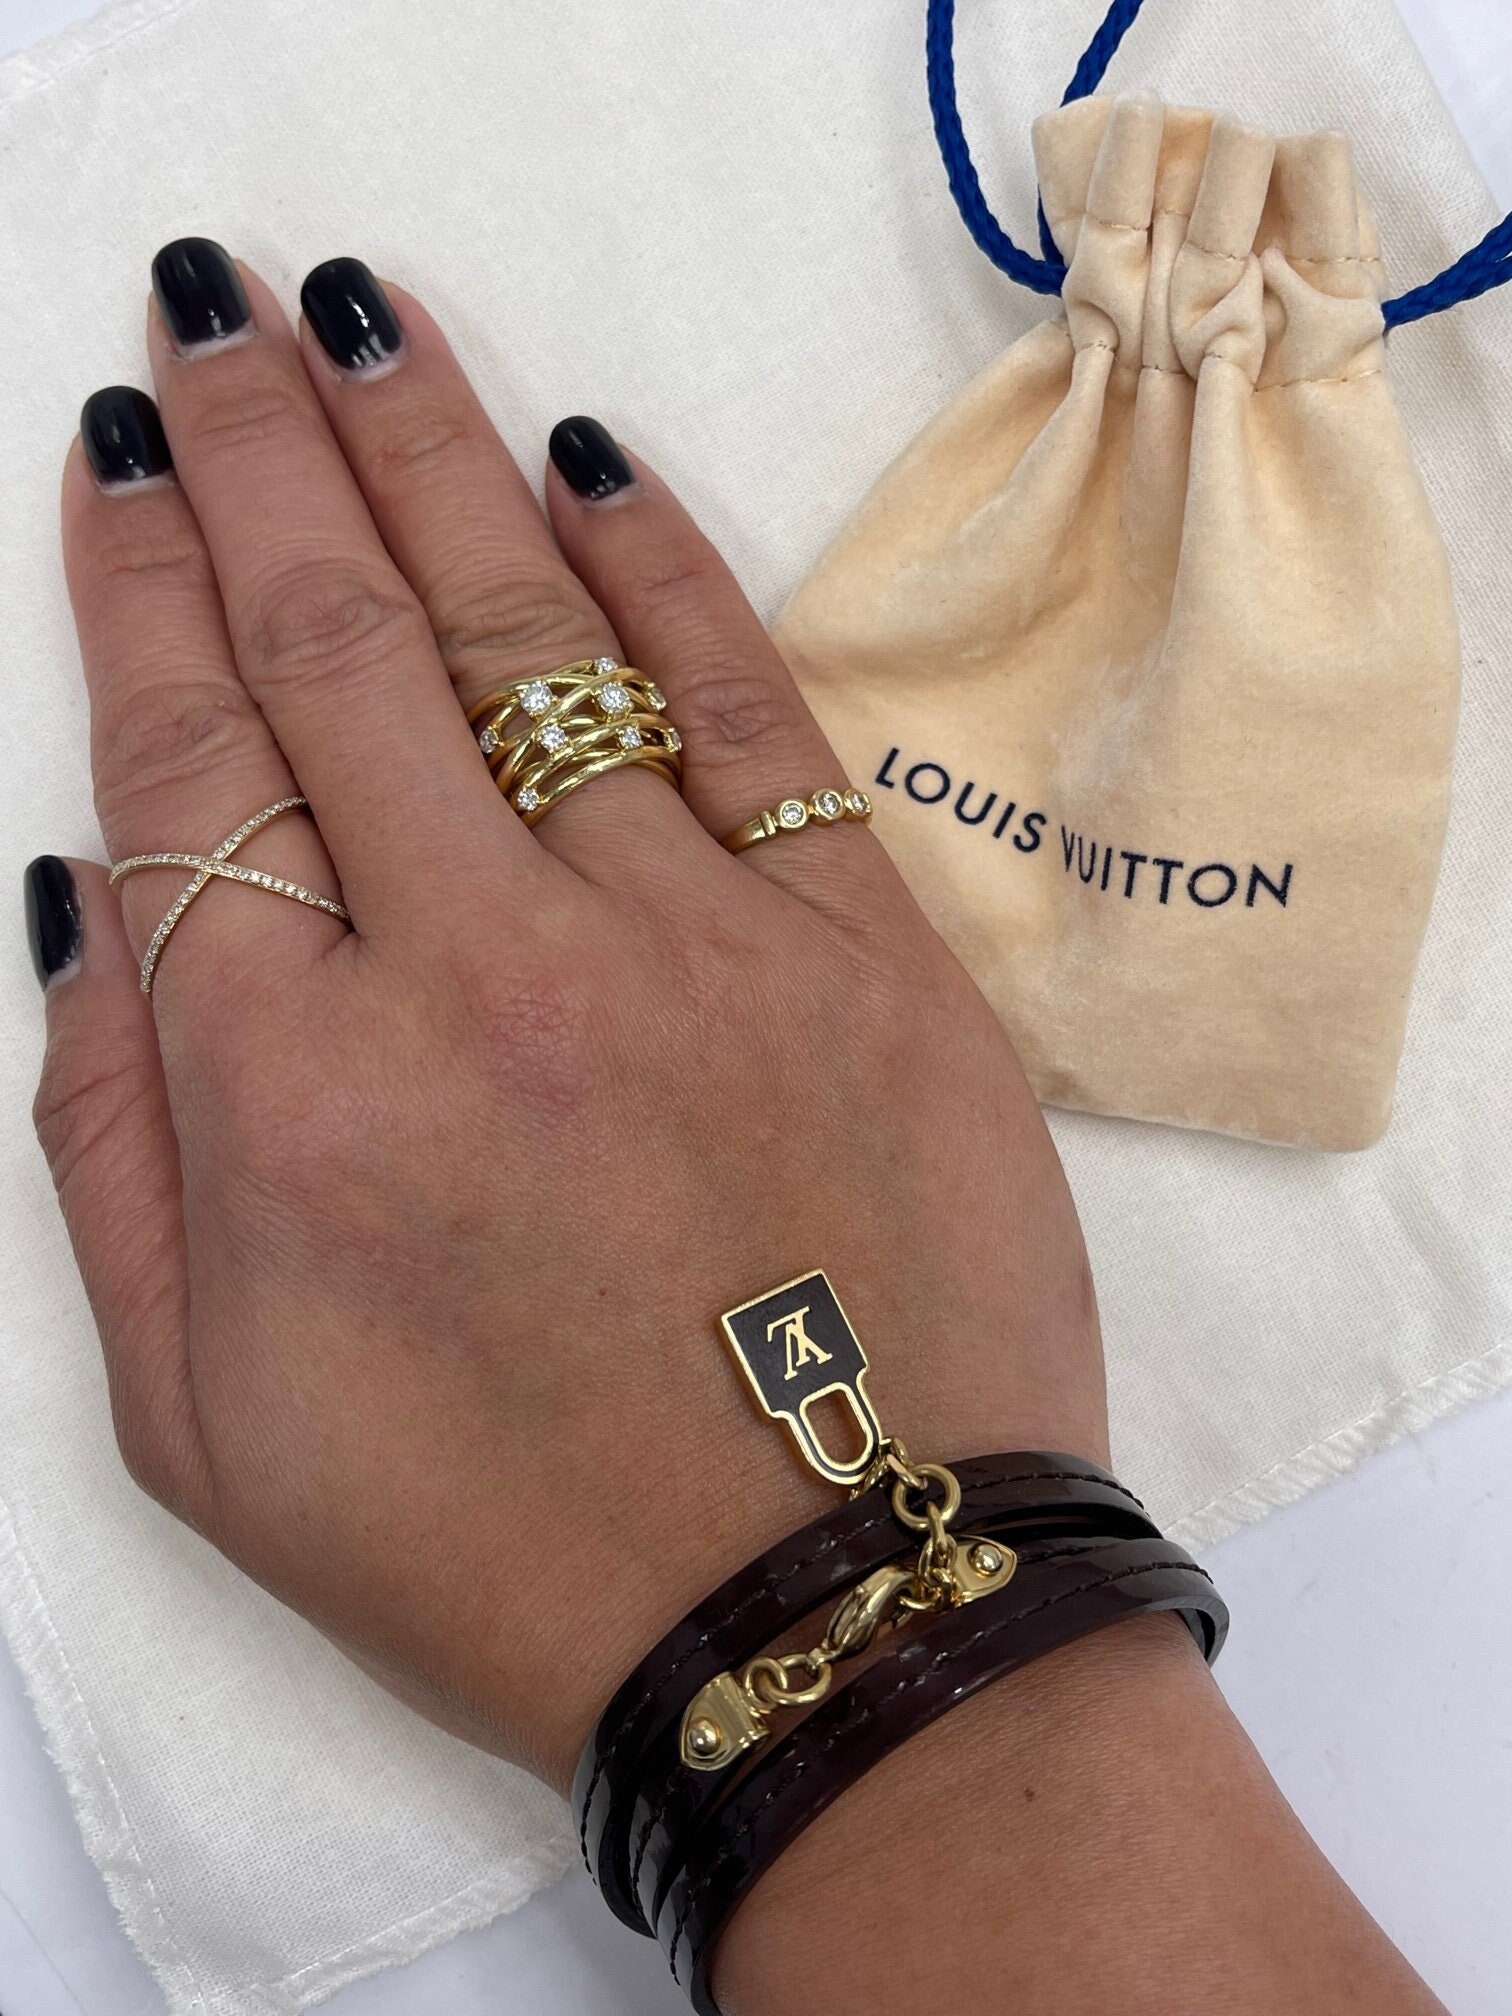 Louis Vuitton LV & Me Gold Tone Letter N Charm Bracelet Louis